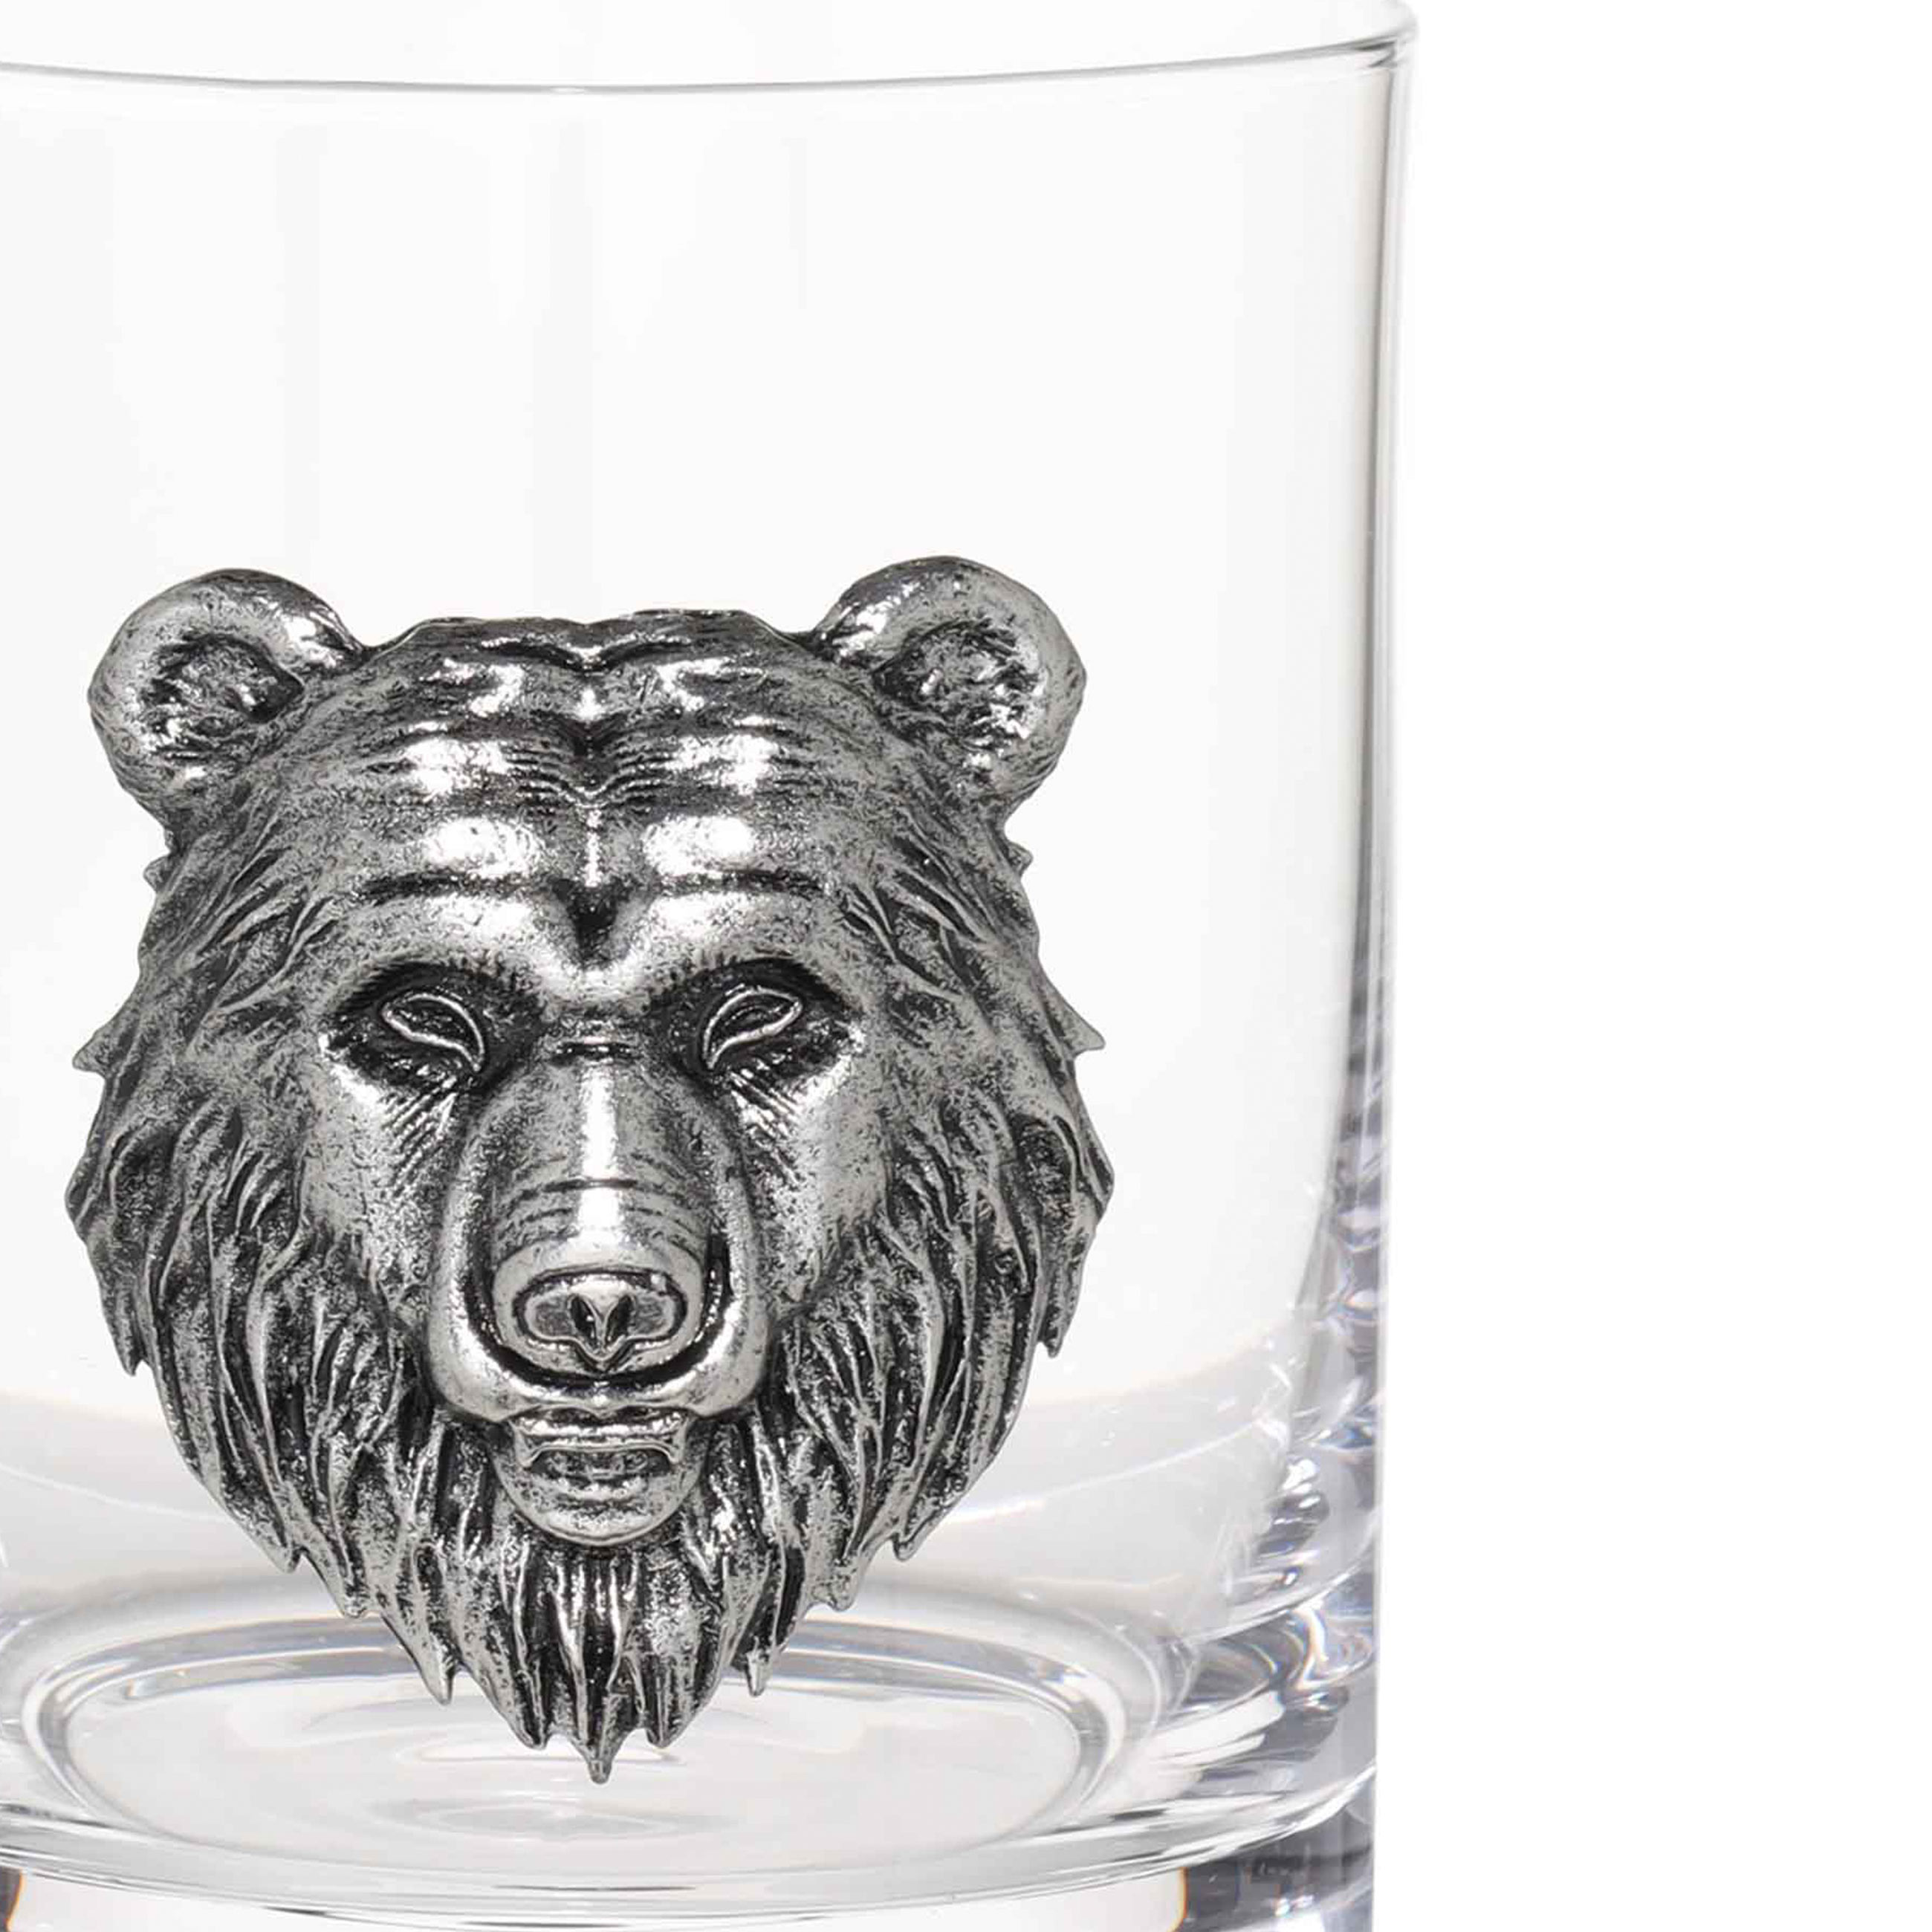 Стакан для виски, 340 мл, стекло/металл, серебристый, Медведь, Lux elements изображение № 4